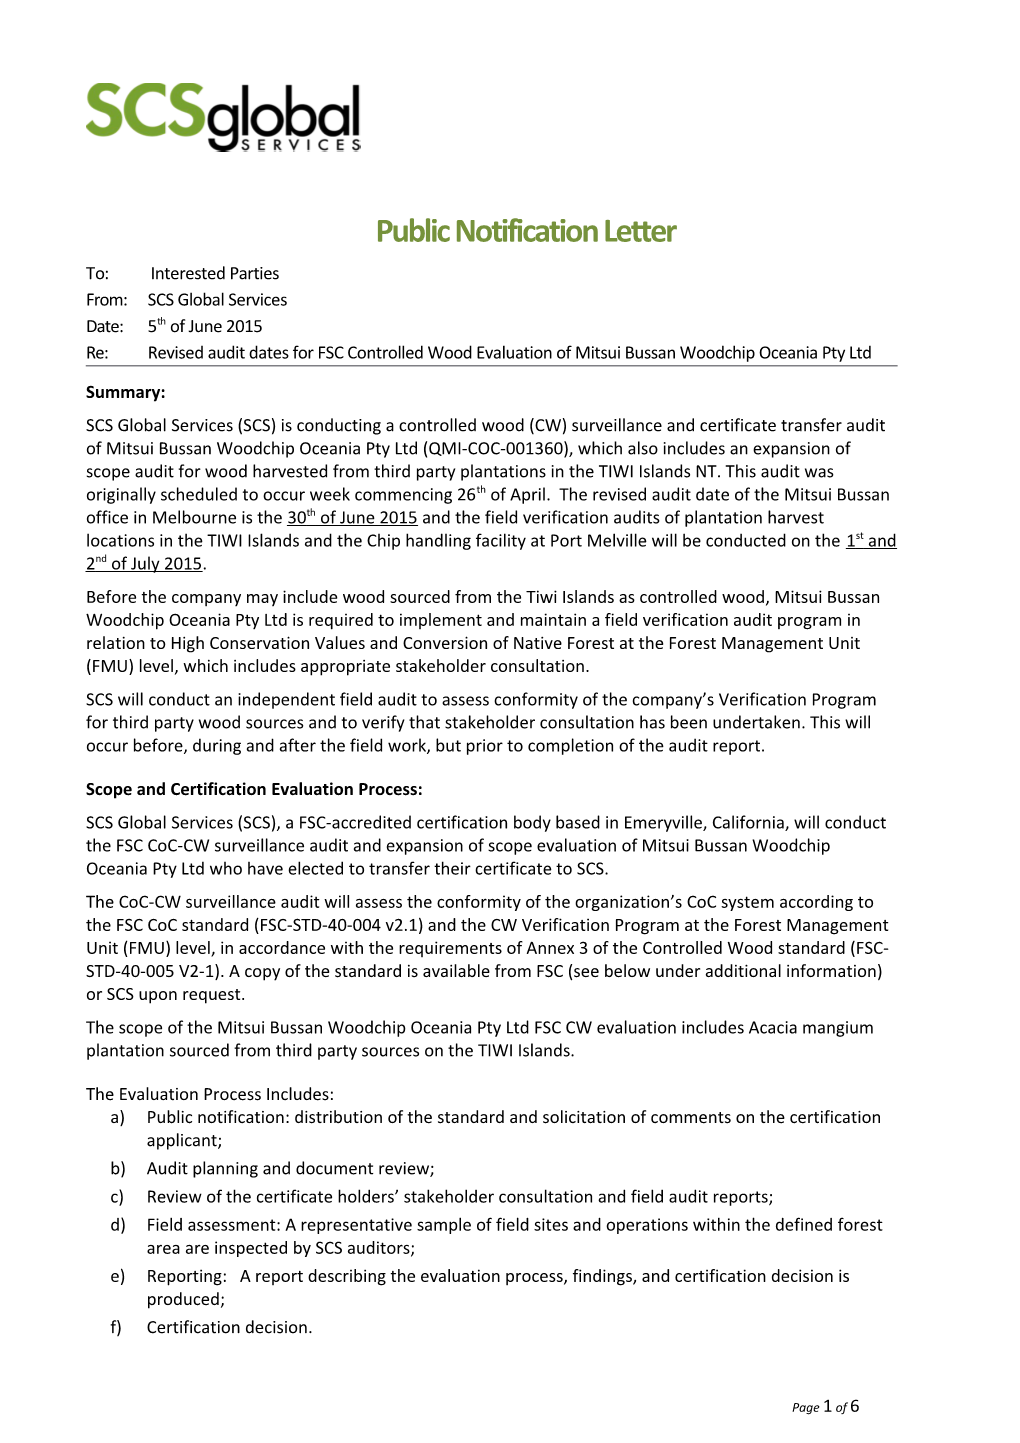 Public Notification Letter s1